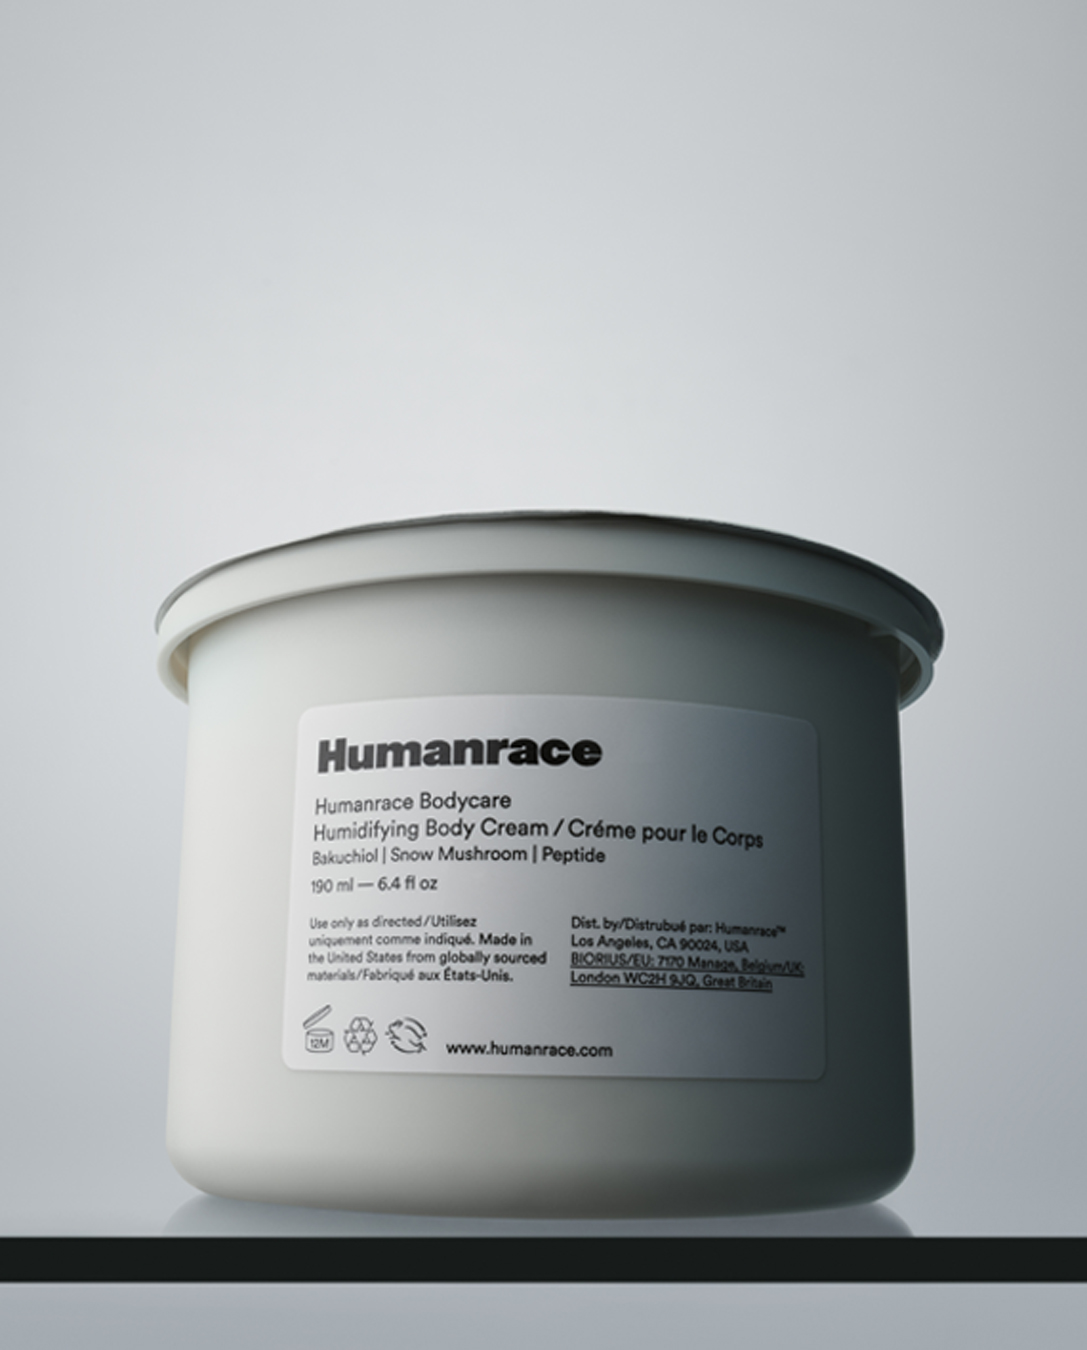 Crema corporal Humanrace reciclable y cartón de recambio.